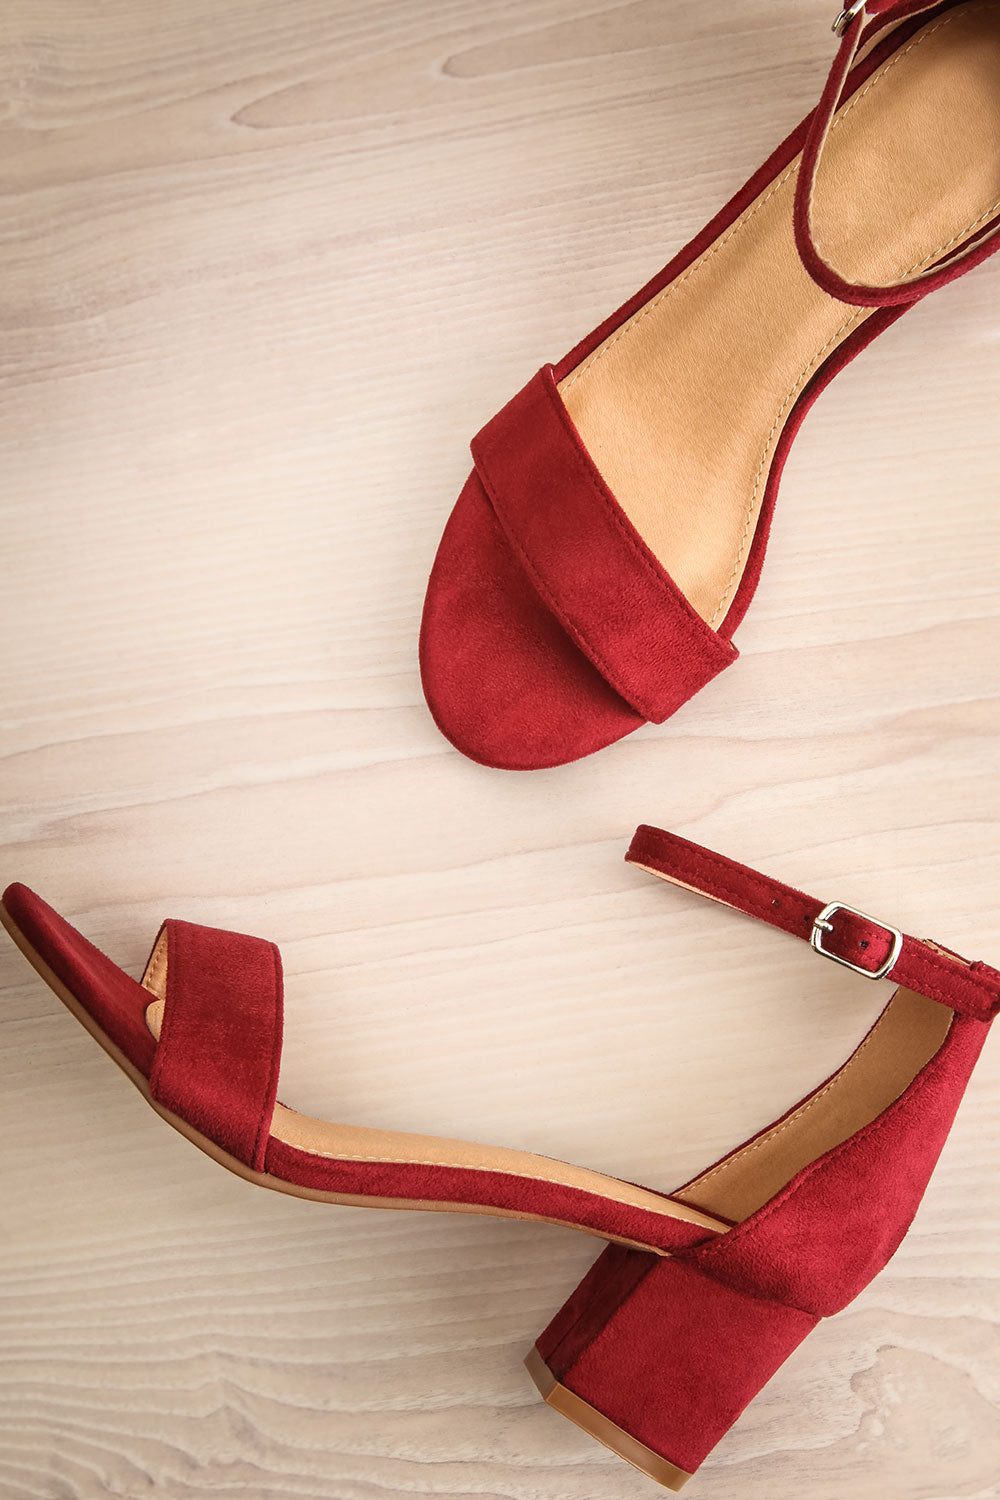 wine red block heels